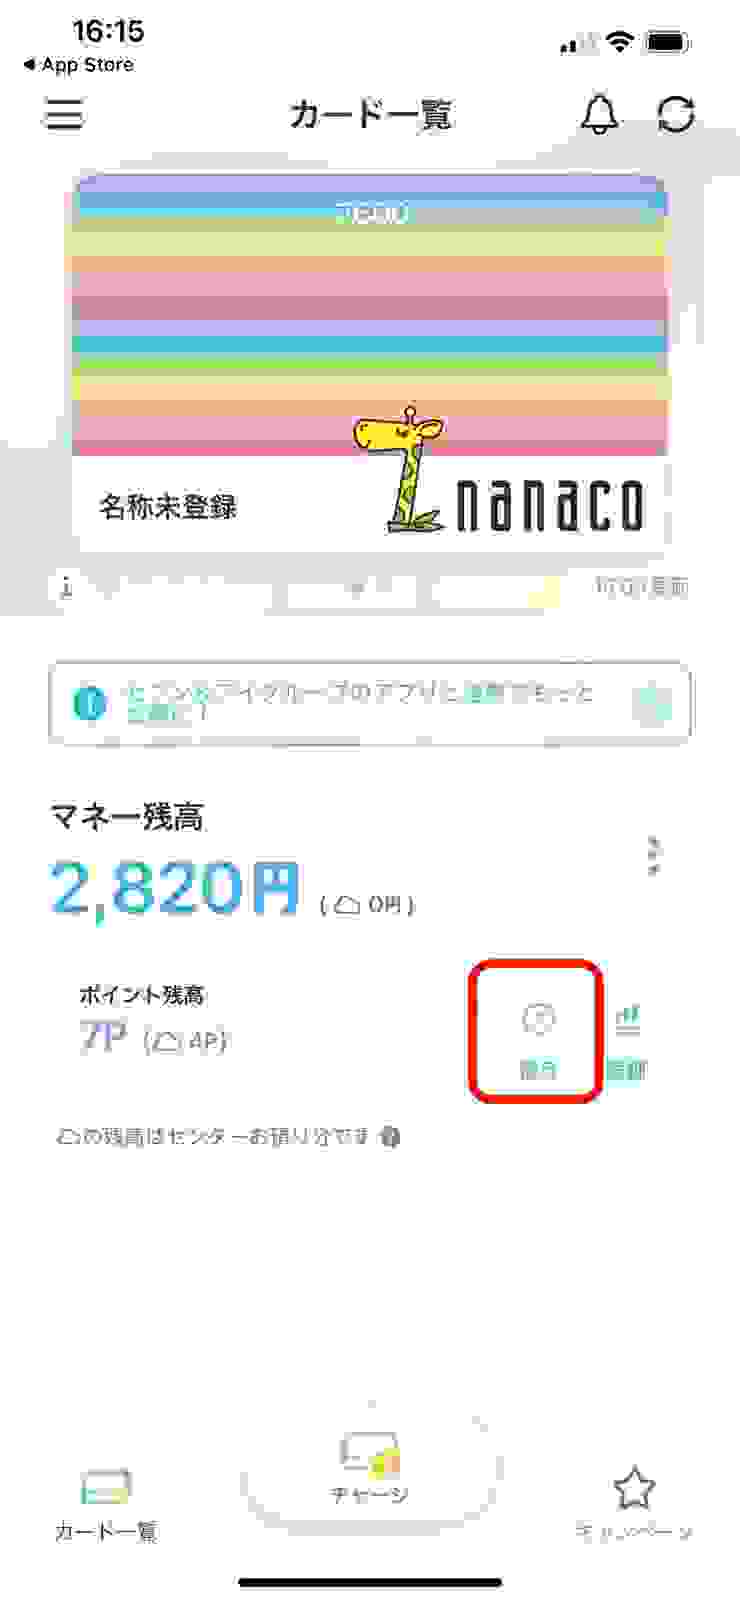 nanaco App首頁畫面